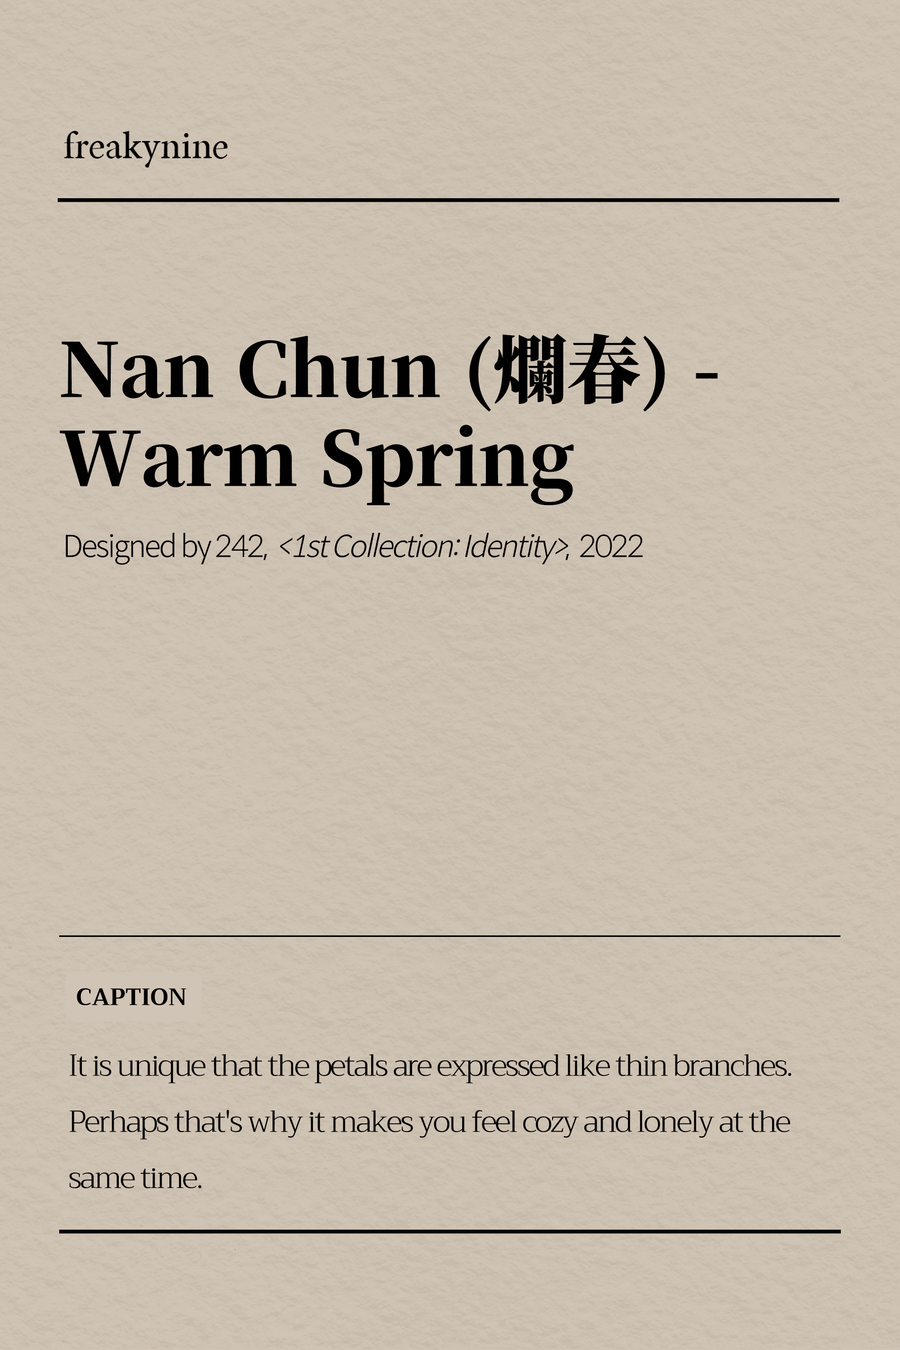 (242) Nan Chun (爛春) - Warm Spring (2EA) - freakynine